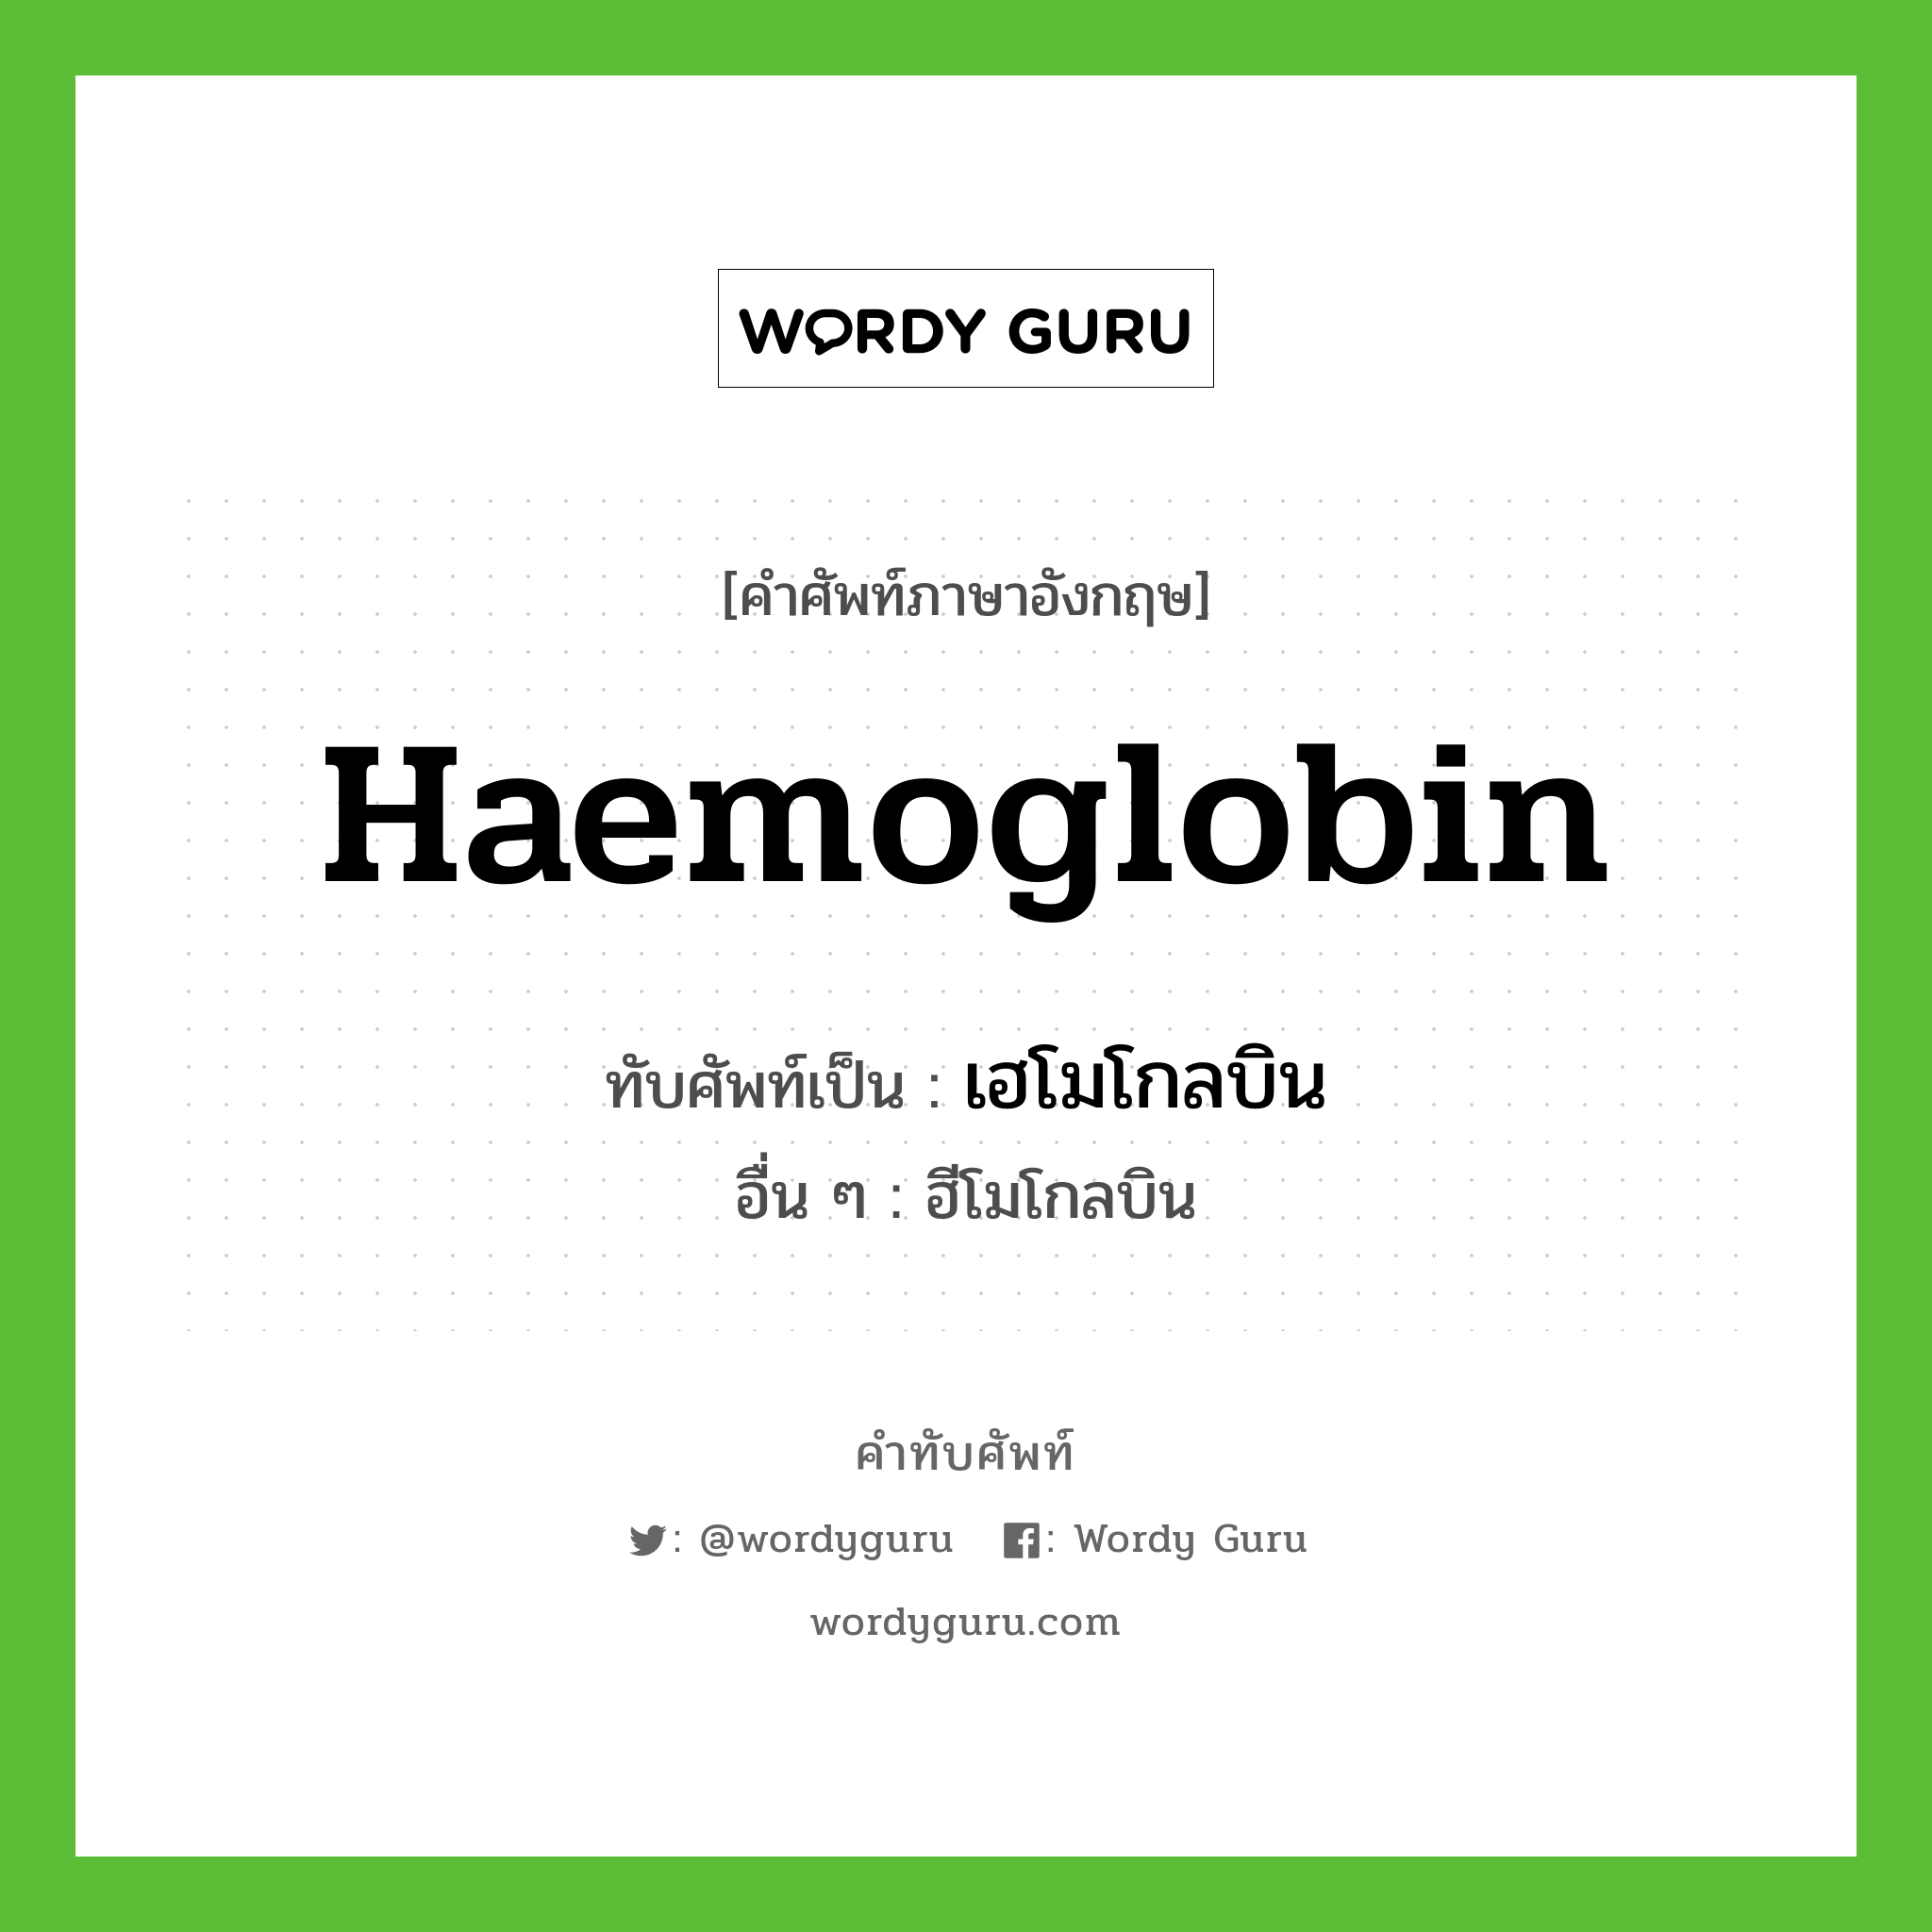 เฮโมโกลบิน เขียนอย่างไร?, คำศัพท์ภาษาอังกฤษ เฮโมโกลบิน ทับศัพท์เป็น haemoglobin อื่น ๆ ฮีโมโกลบิน